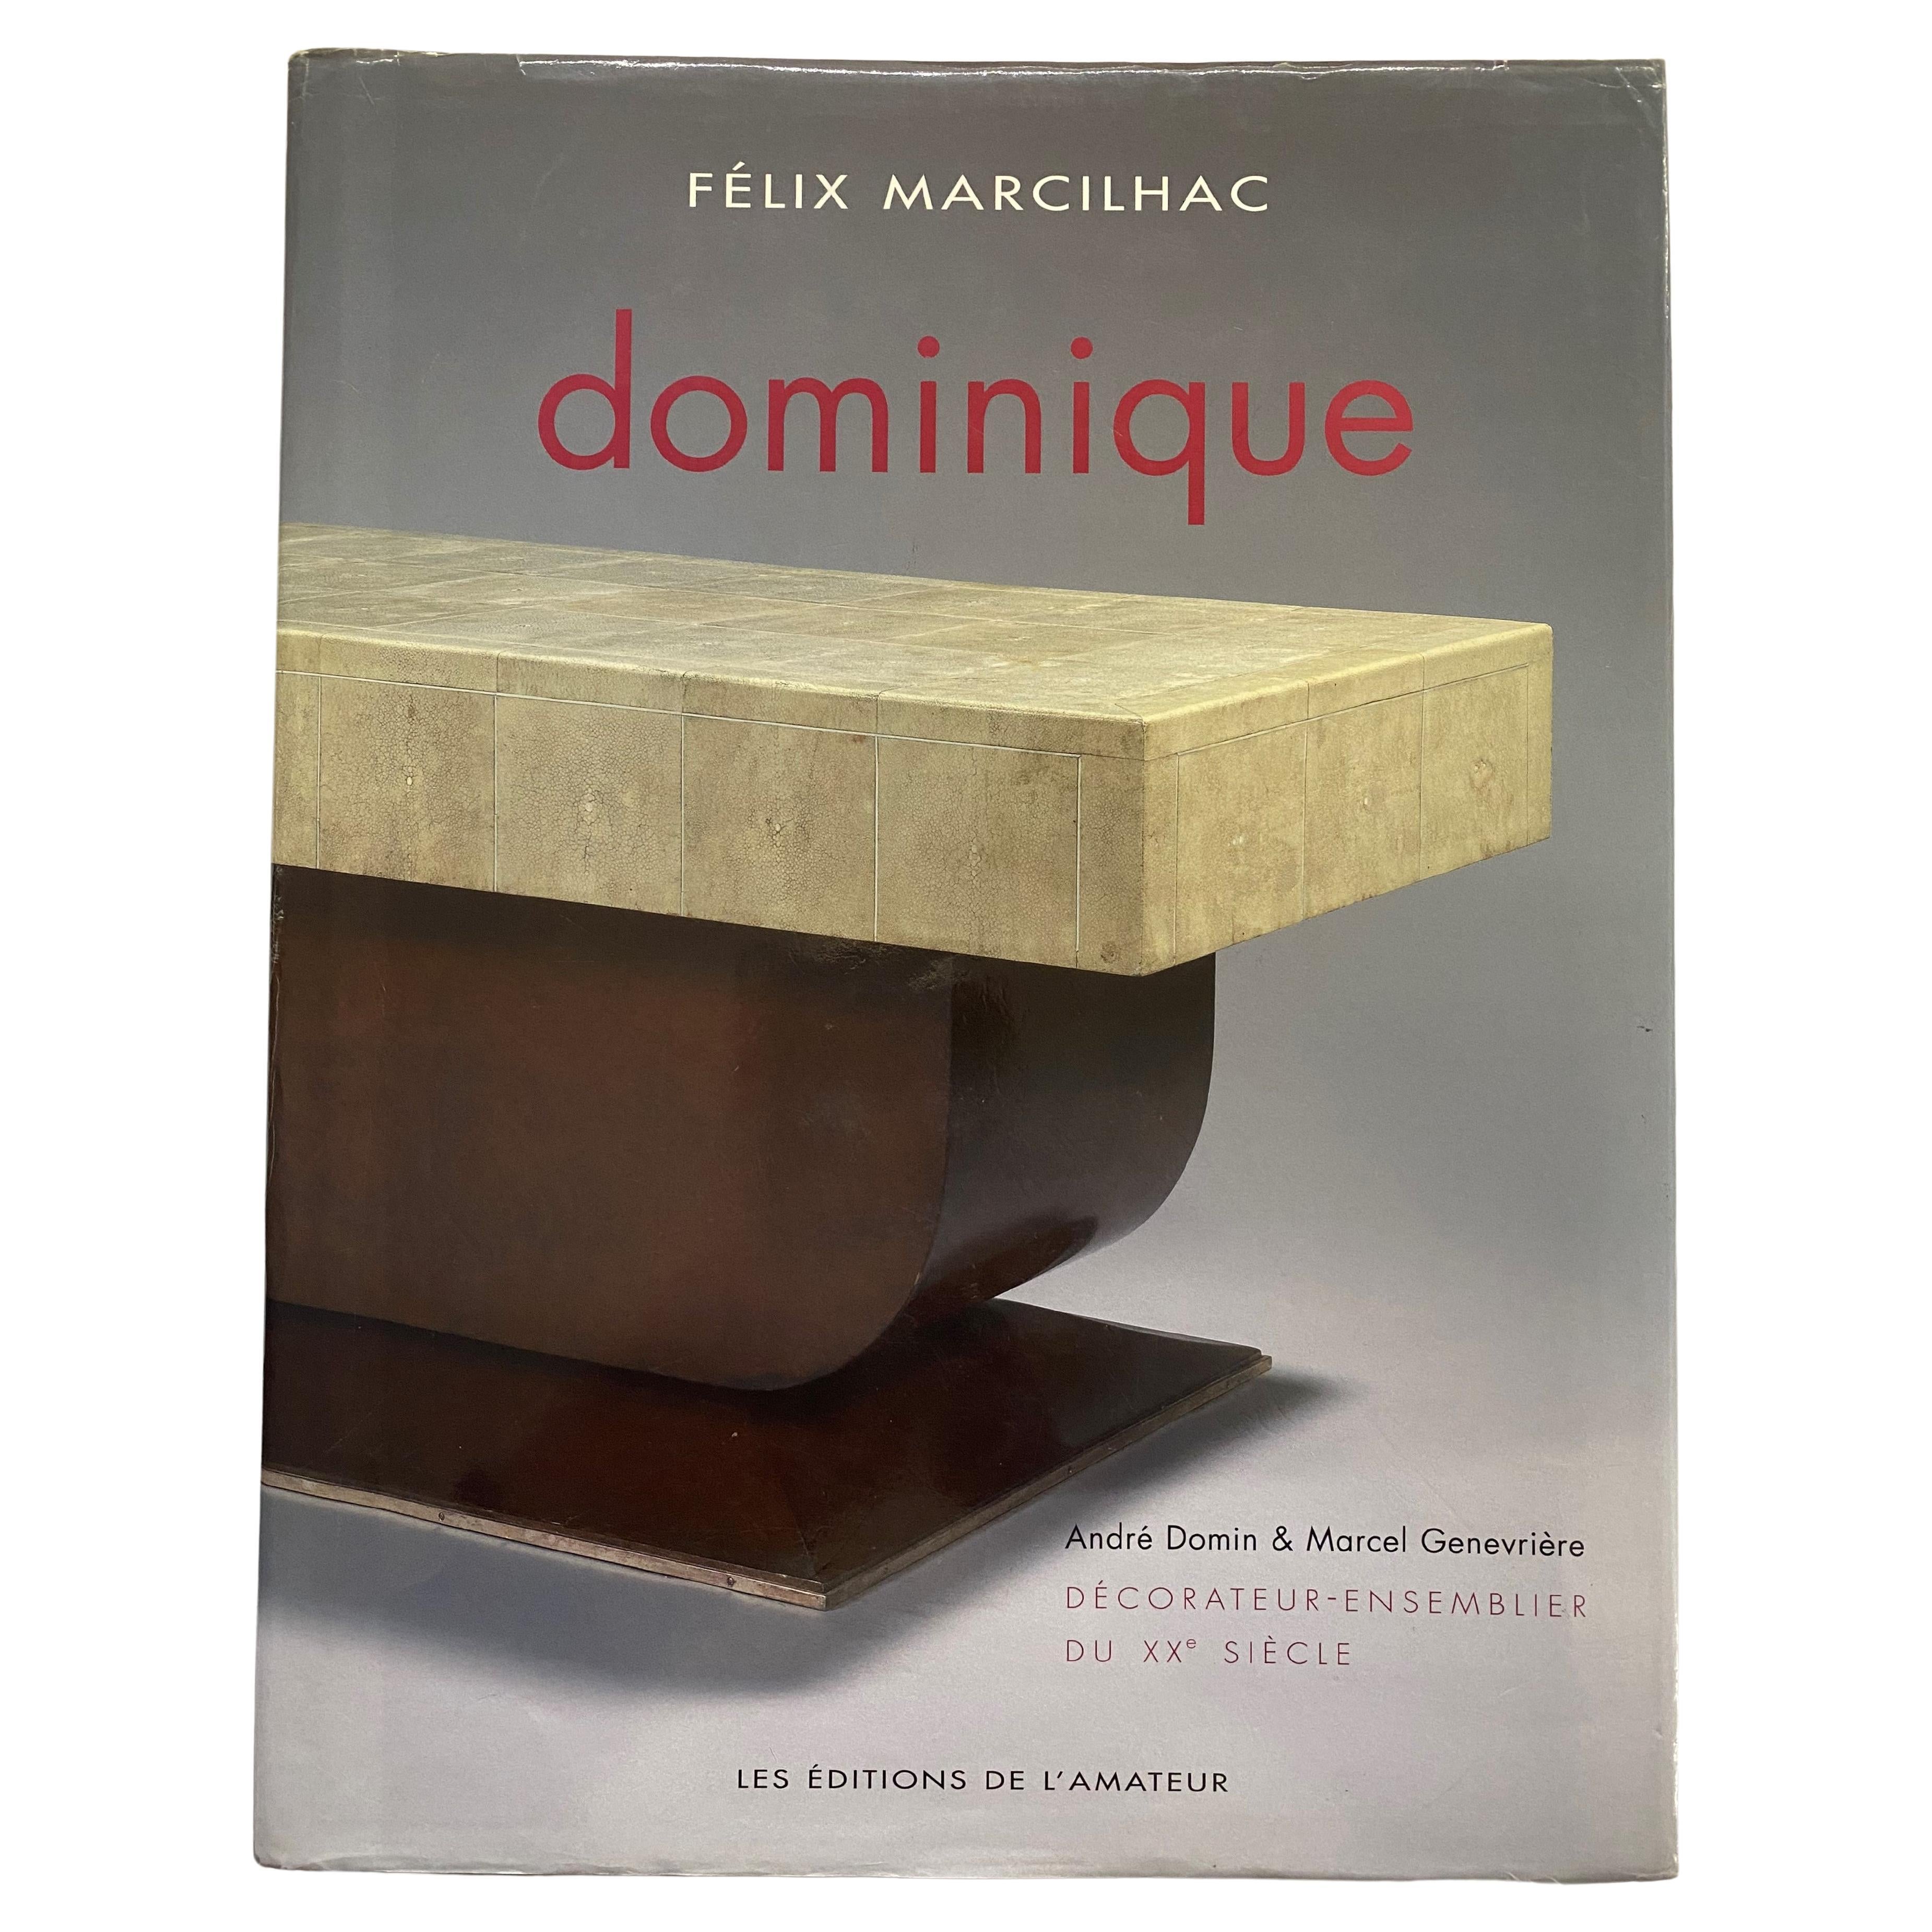 Dominique: Decorateur-Ensemblier Du XX Siecle by Felix Marcilhac (Book) For Sale